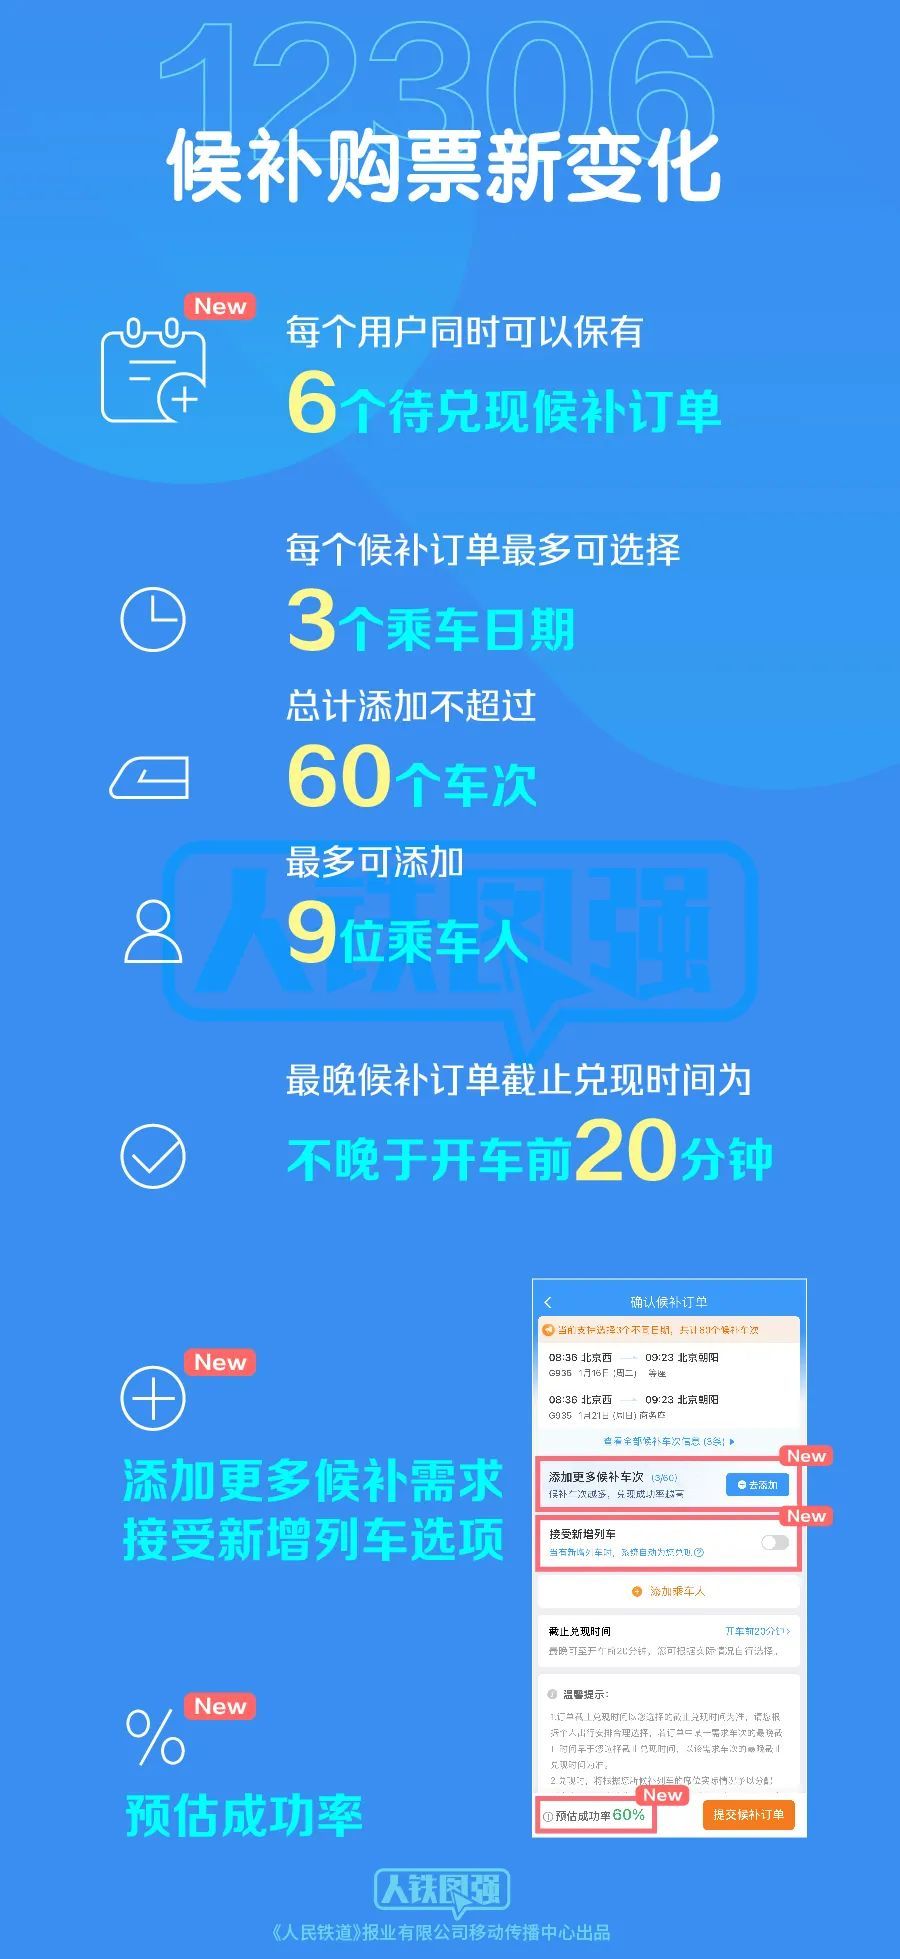 中国铁路：12306候补购票功能优化